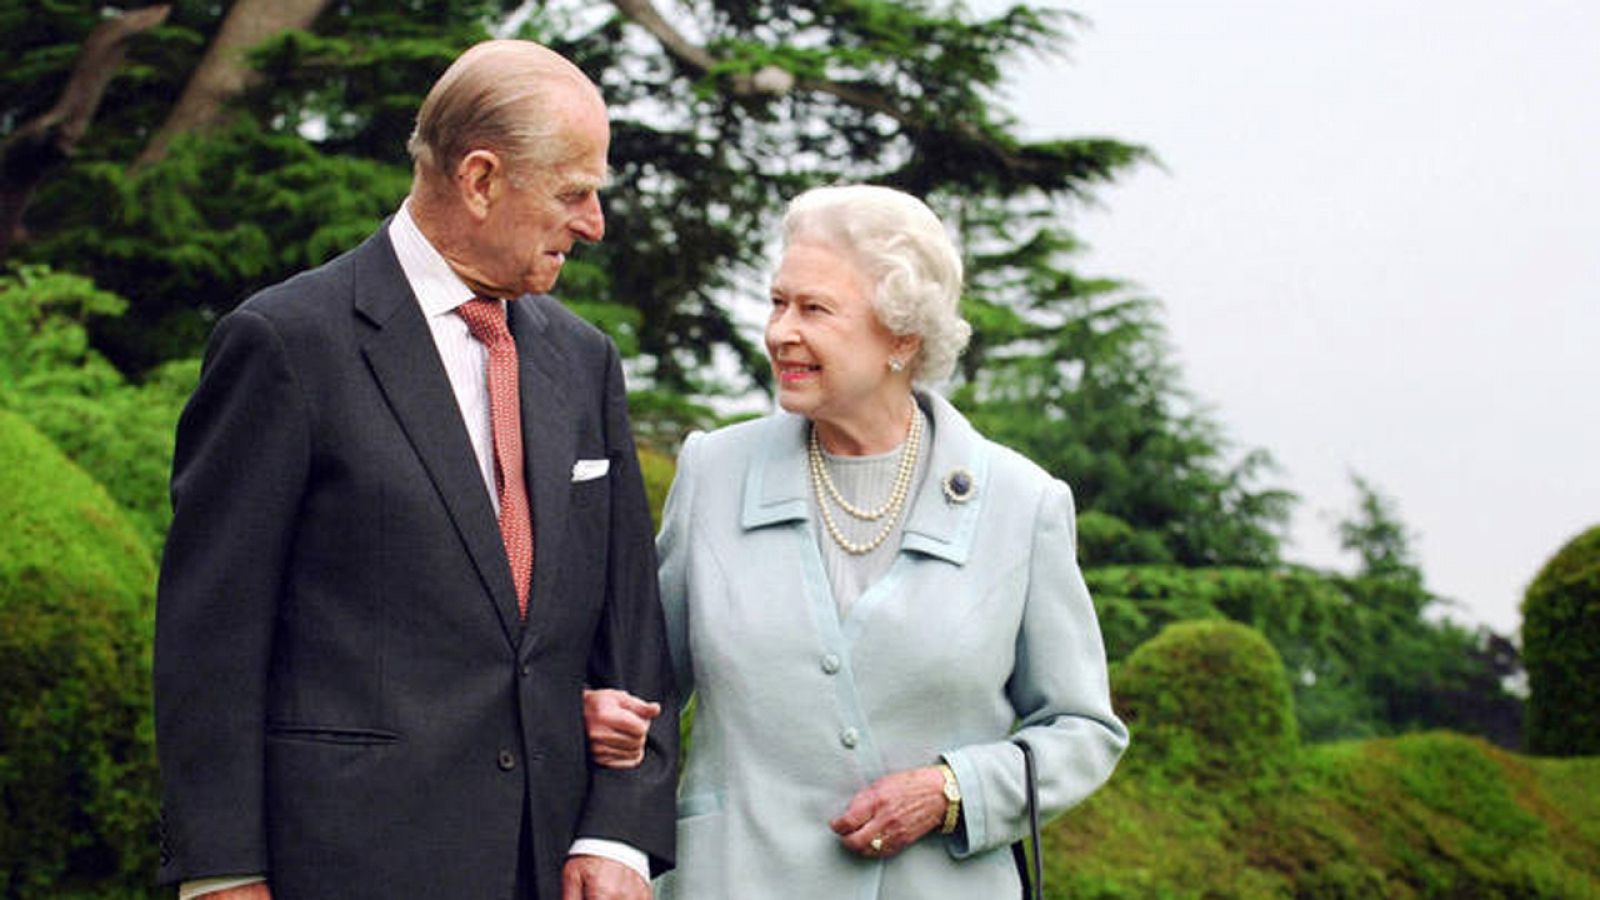 Fotografía del duque de Edimburgo y la reina Isabel II tomada con motivo de la celebración de sus bodas de diamante con la monarca, que se conmemoró en 2007.